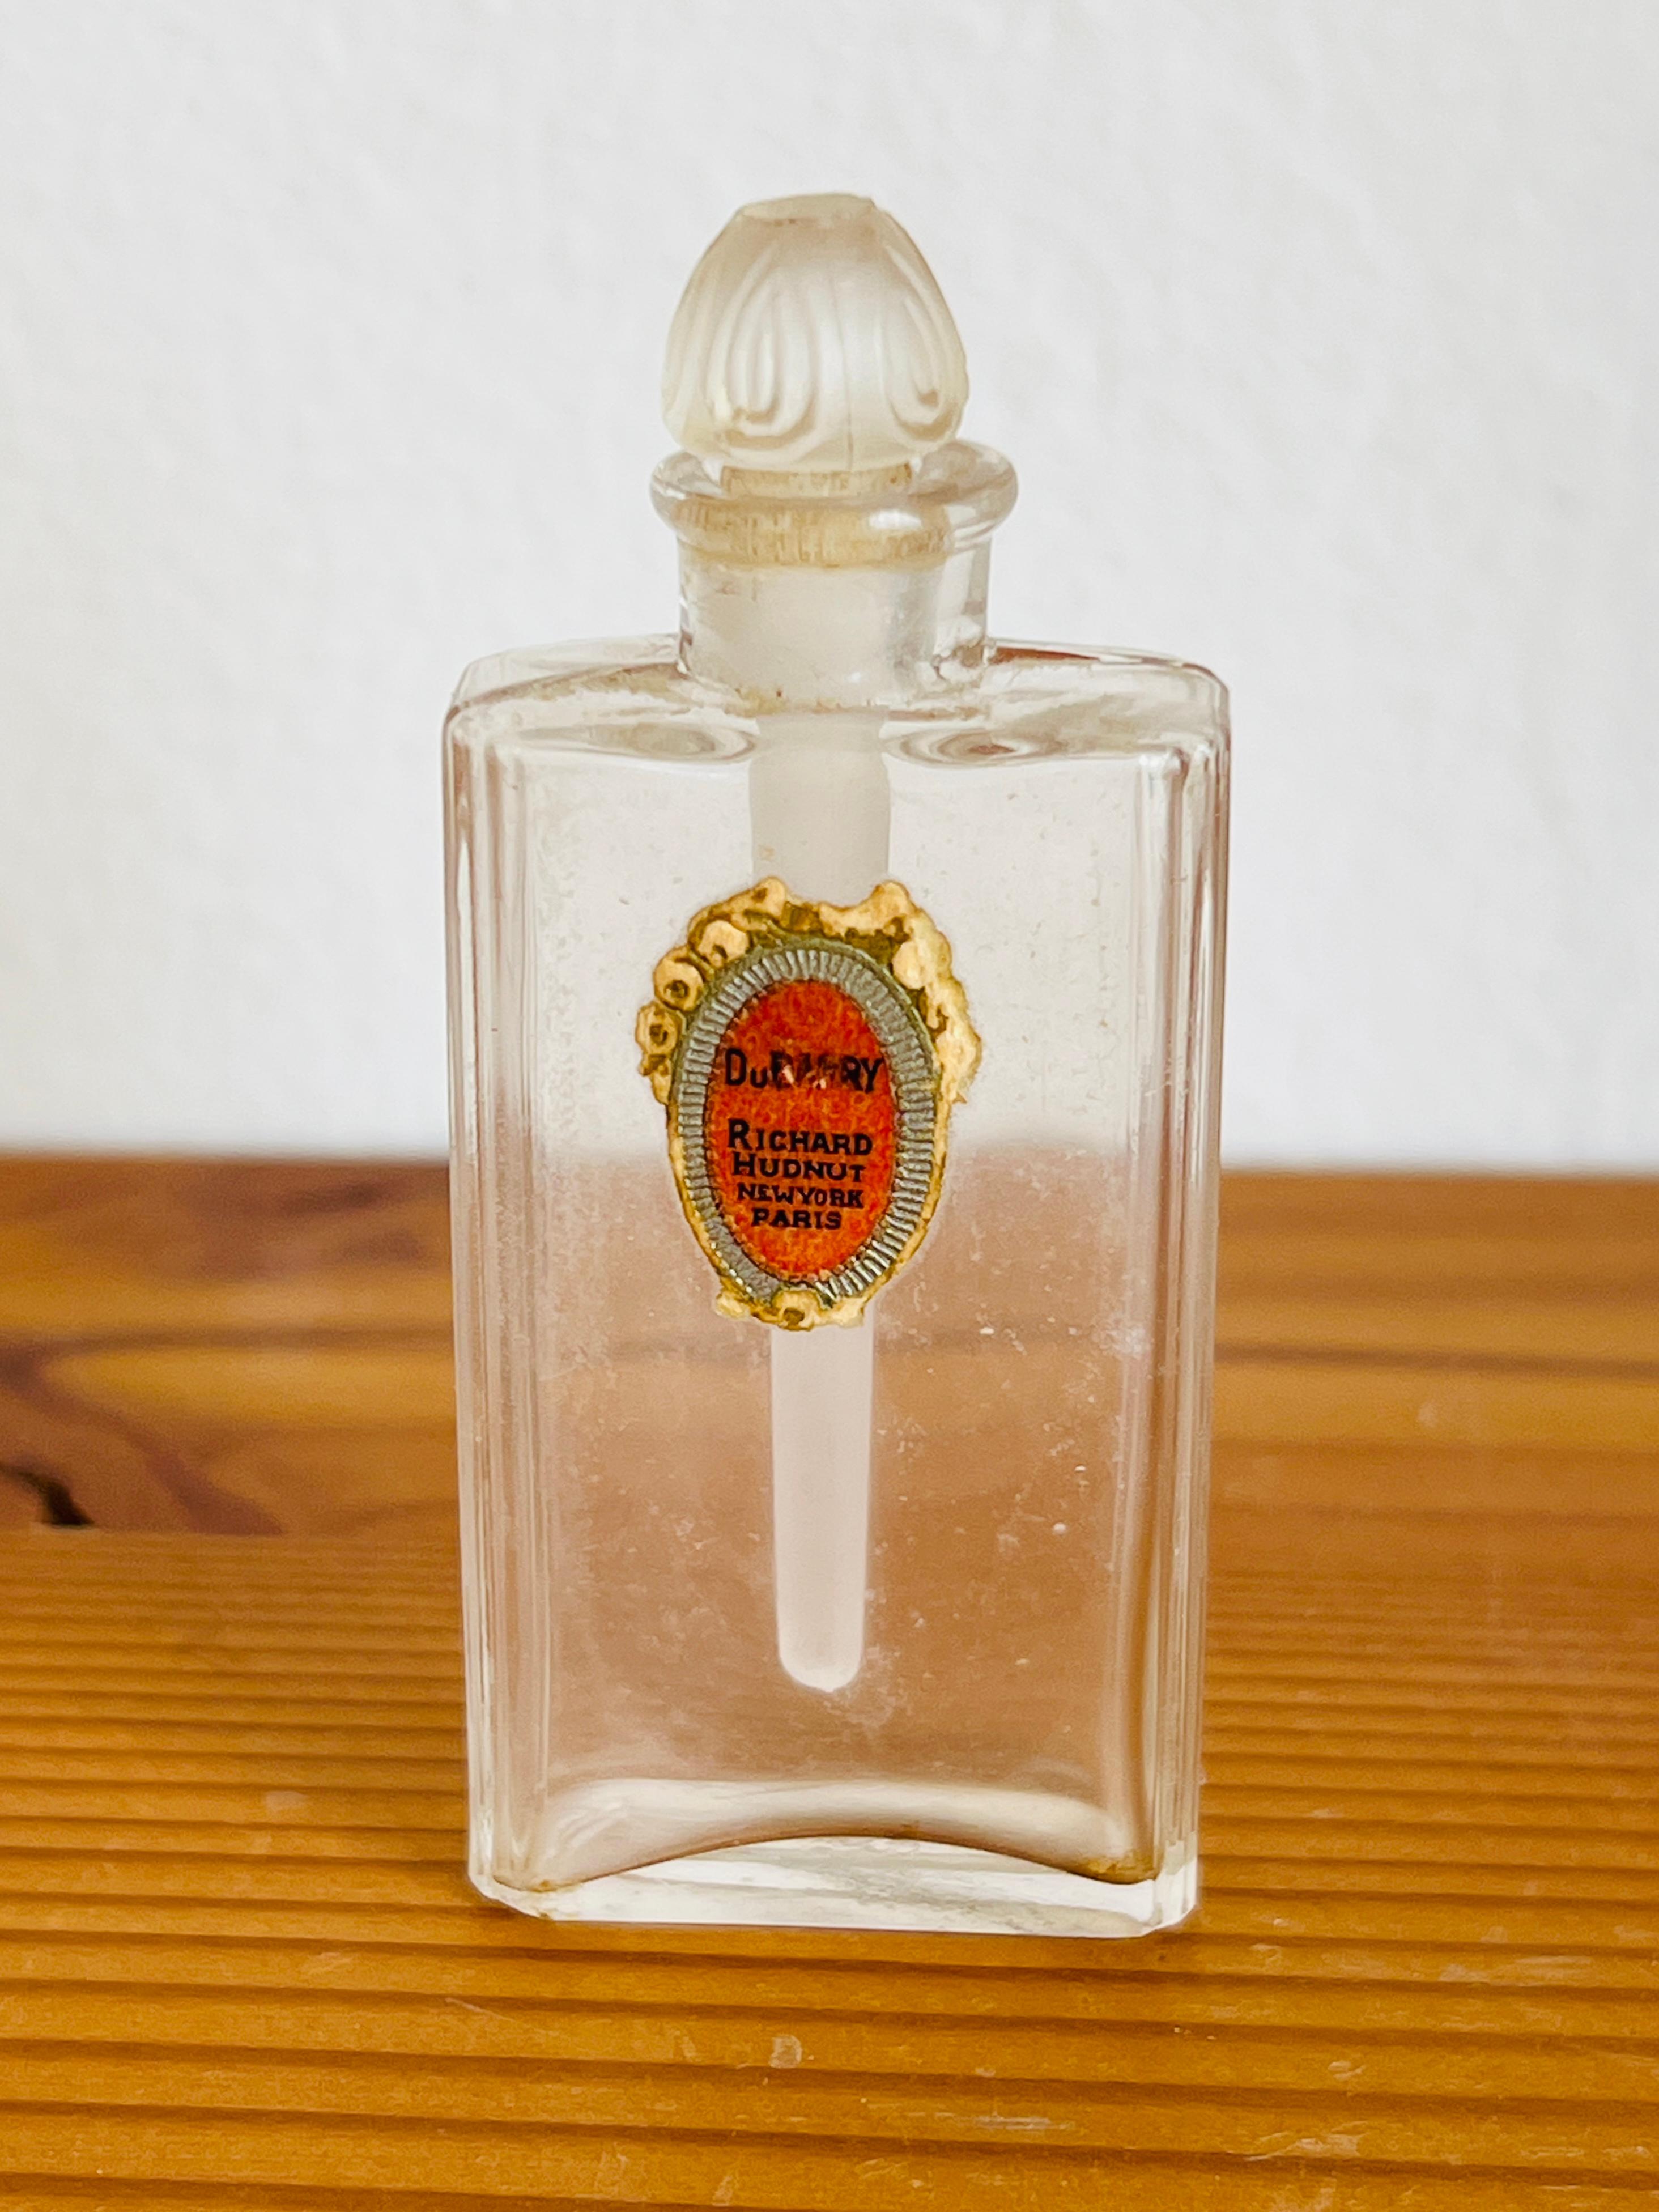 Dieser sehr seltene Miniatur-Parfümflakon enthielt einst das Parfüm Dubarry von Richard Hudnut. 

Größe: 2-1/4